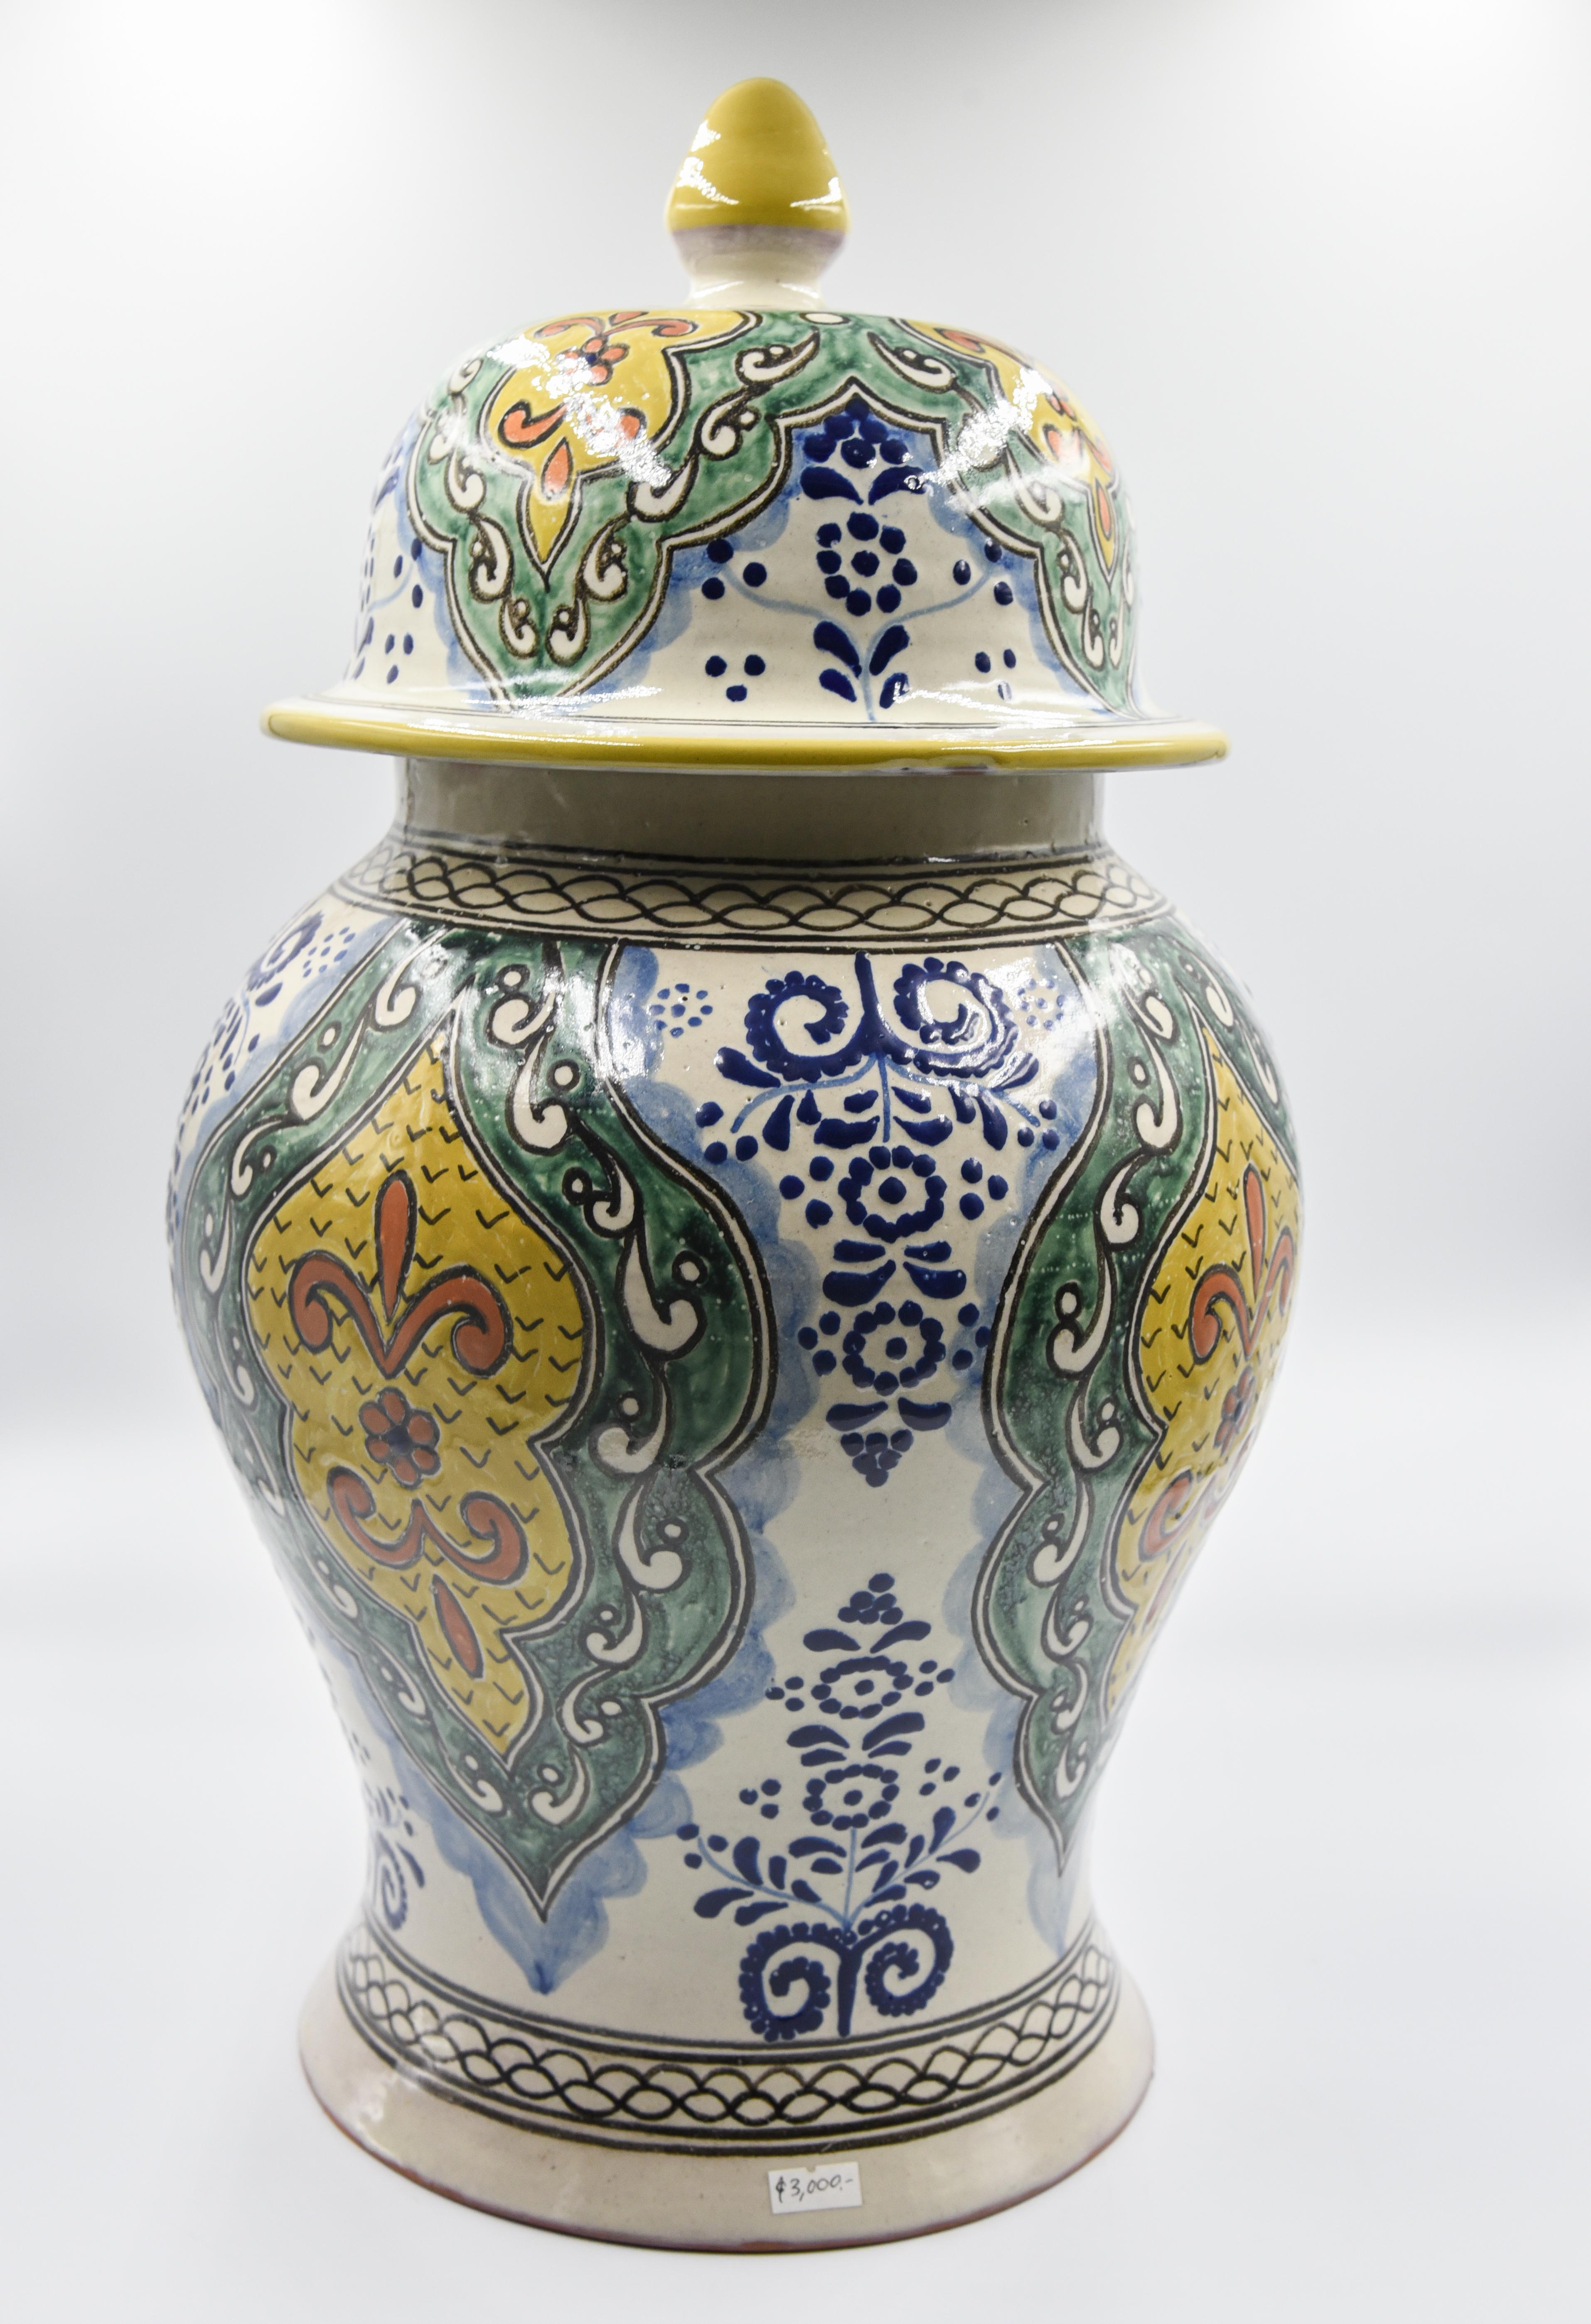 Authentische Talavera dekorative Vase Volkskunst Gefäß mexikanischen Keramik blau gelb 3